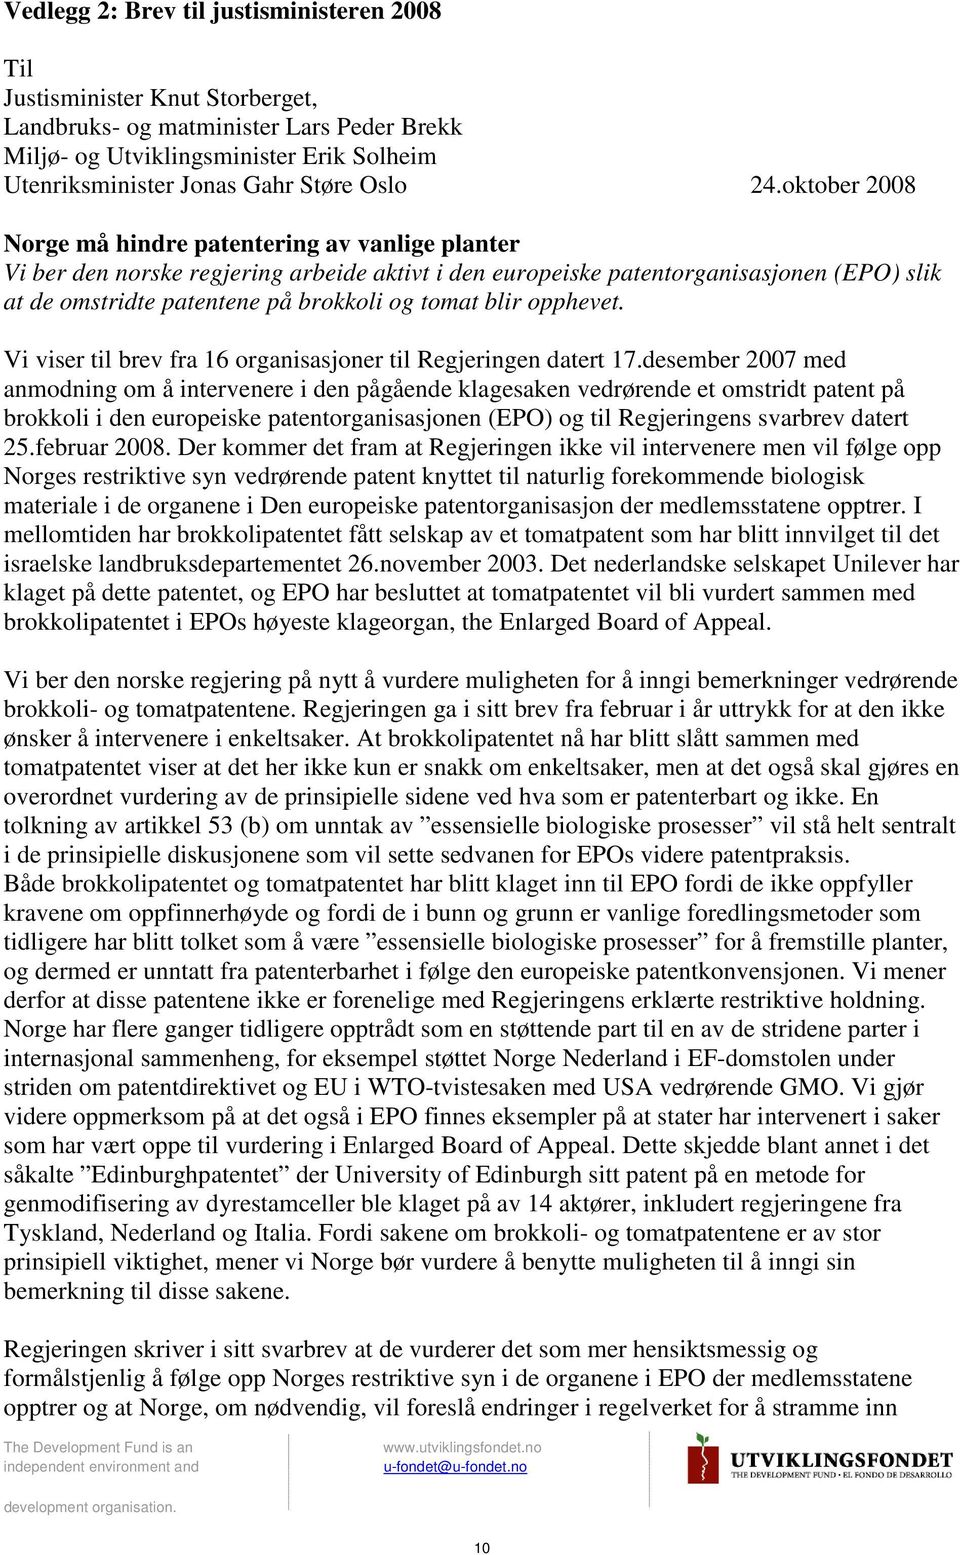 oktober 2008 Norge må hindre patentering av vanlige planter Vi ber den norske regjering arbeide aktivt i den europeiske patentorganisasjonen (EPO) slik at de omstridte patentene på brokkoli og tomat